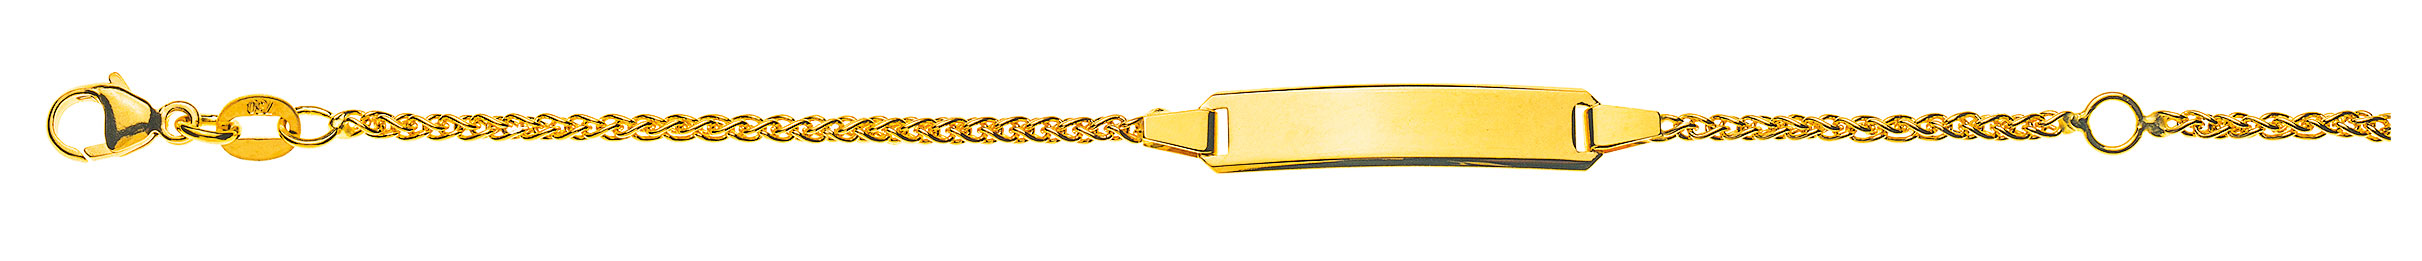 AURONOS Prestige ID bracelet 18k yellow gold plait chain 18cm